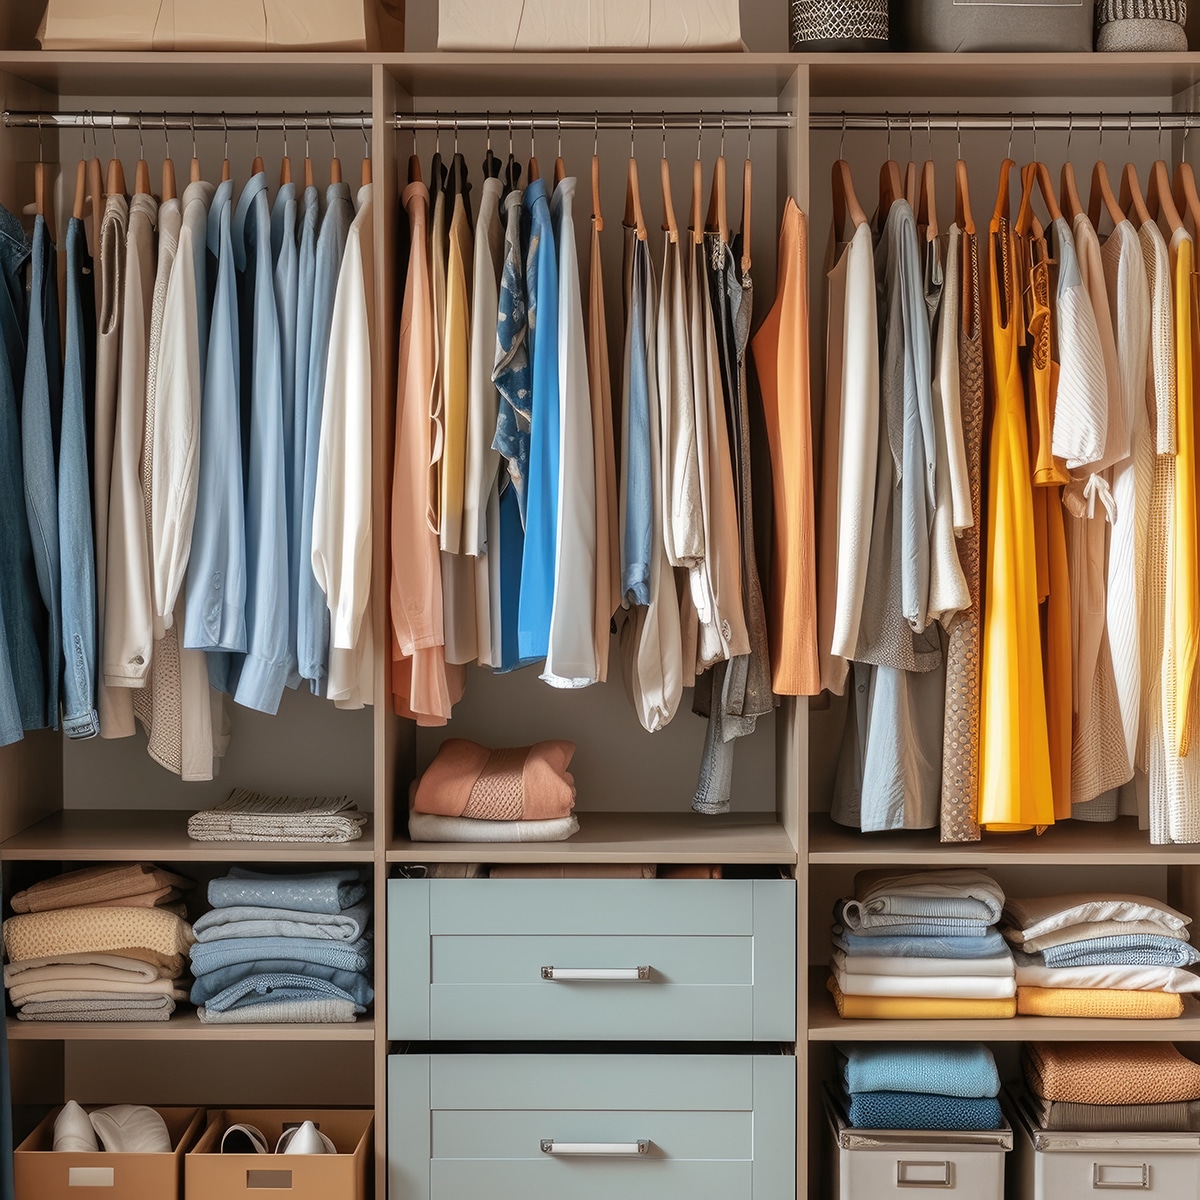 Schön organisierter Kleiderschrank mit bunten Kleidungsstücken, Farb- und Stilberatung, Kleiderschrank-Check